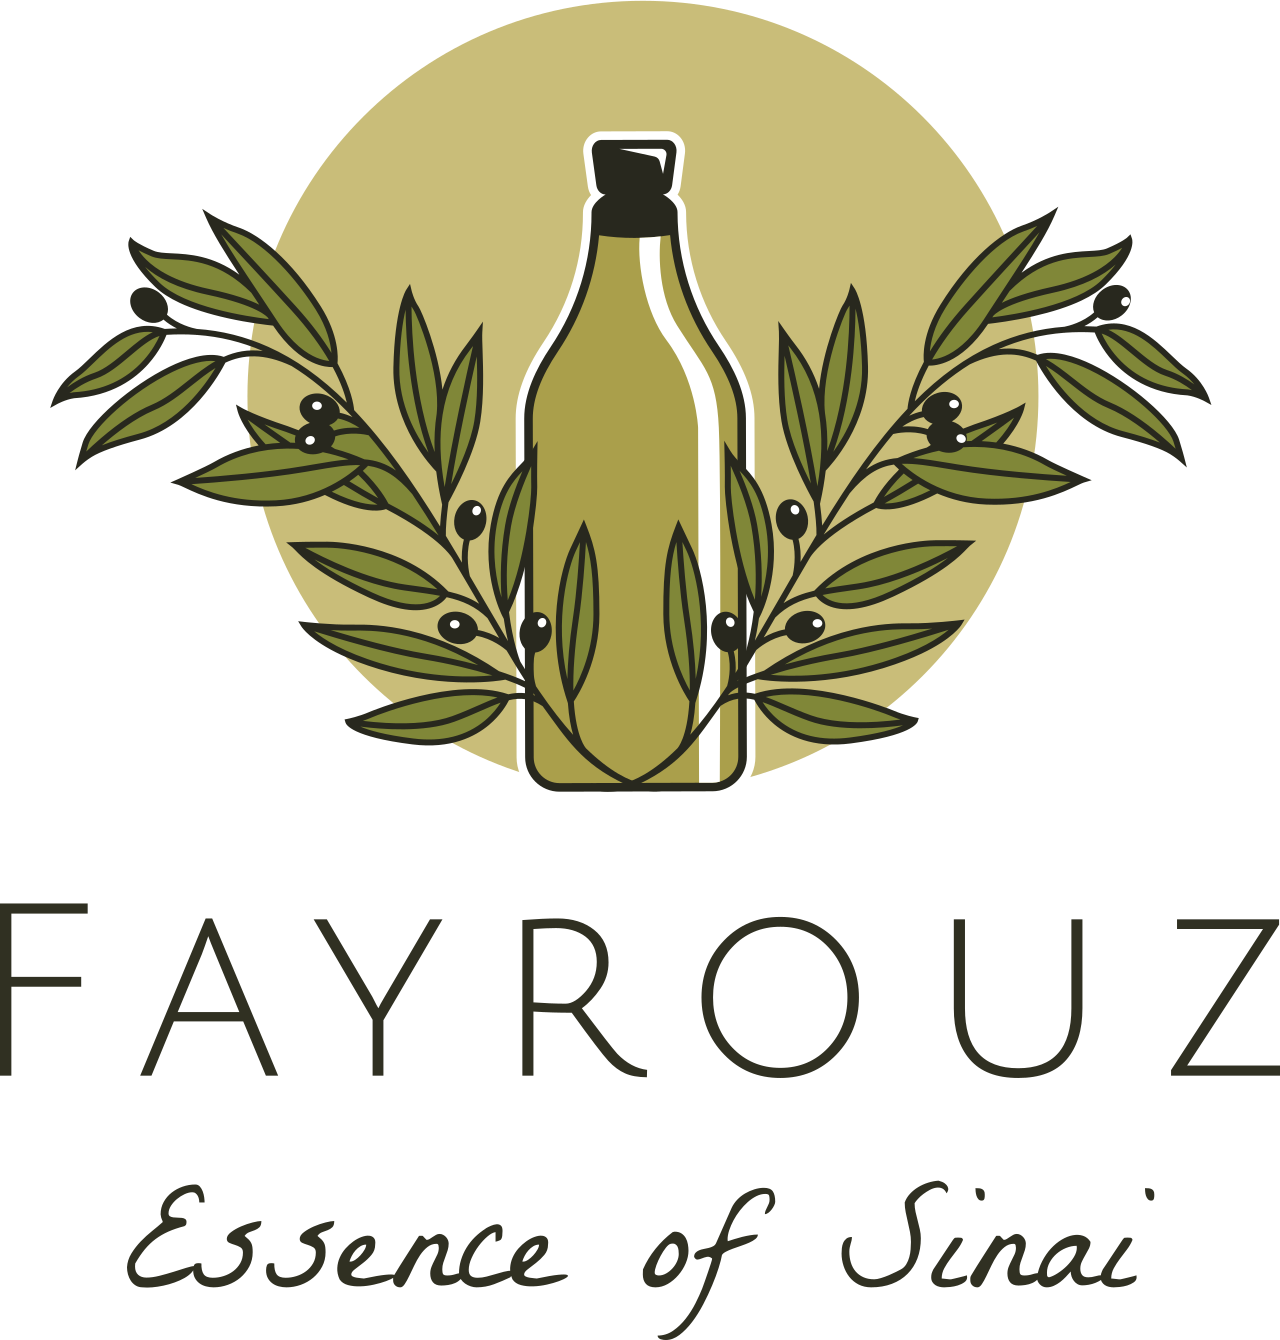 Fayrouz's logo